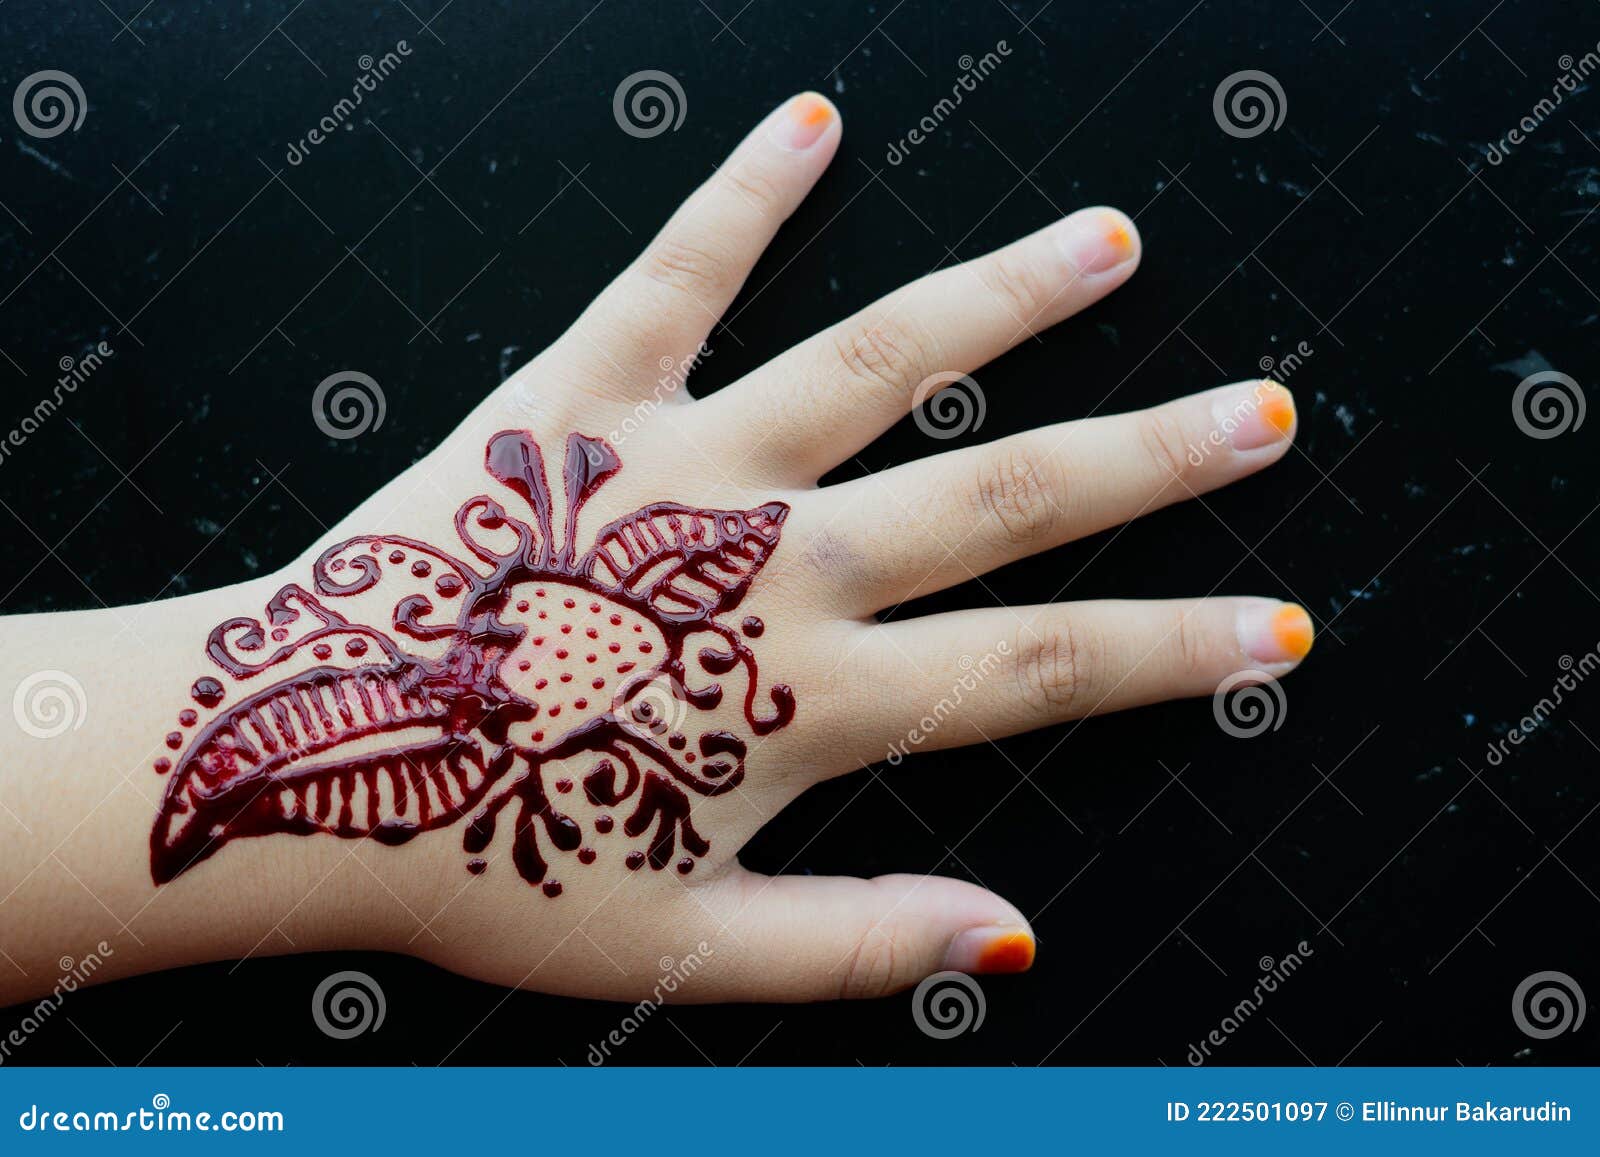 https://thumbs.dreamstime.com/z/henna-ornamente-auf-m%C3%A4dchen-hand-nahaufnahme-einem-dunklen-hintergrund-222501097.jpg